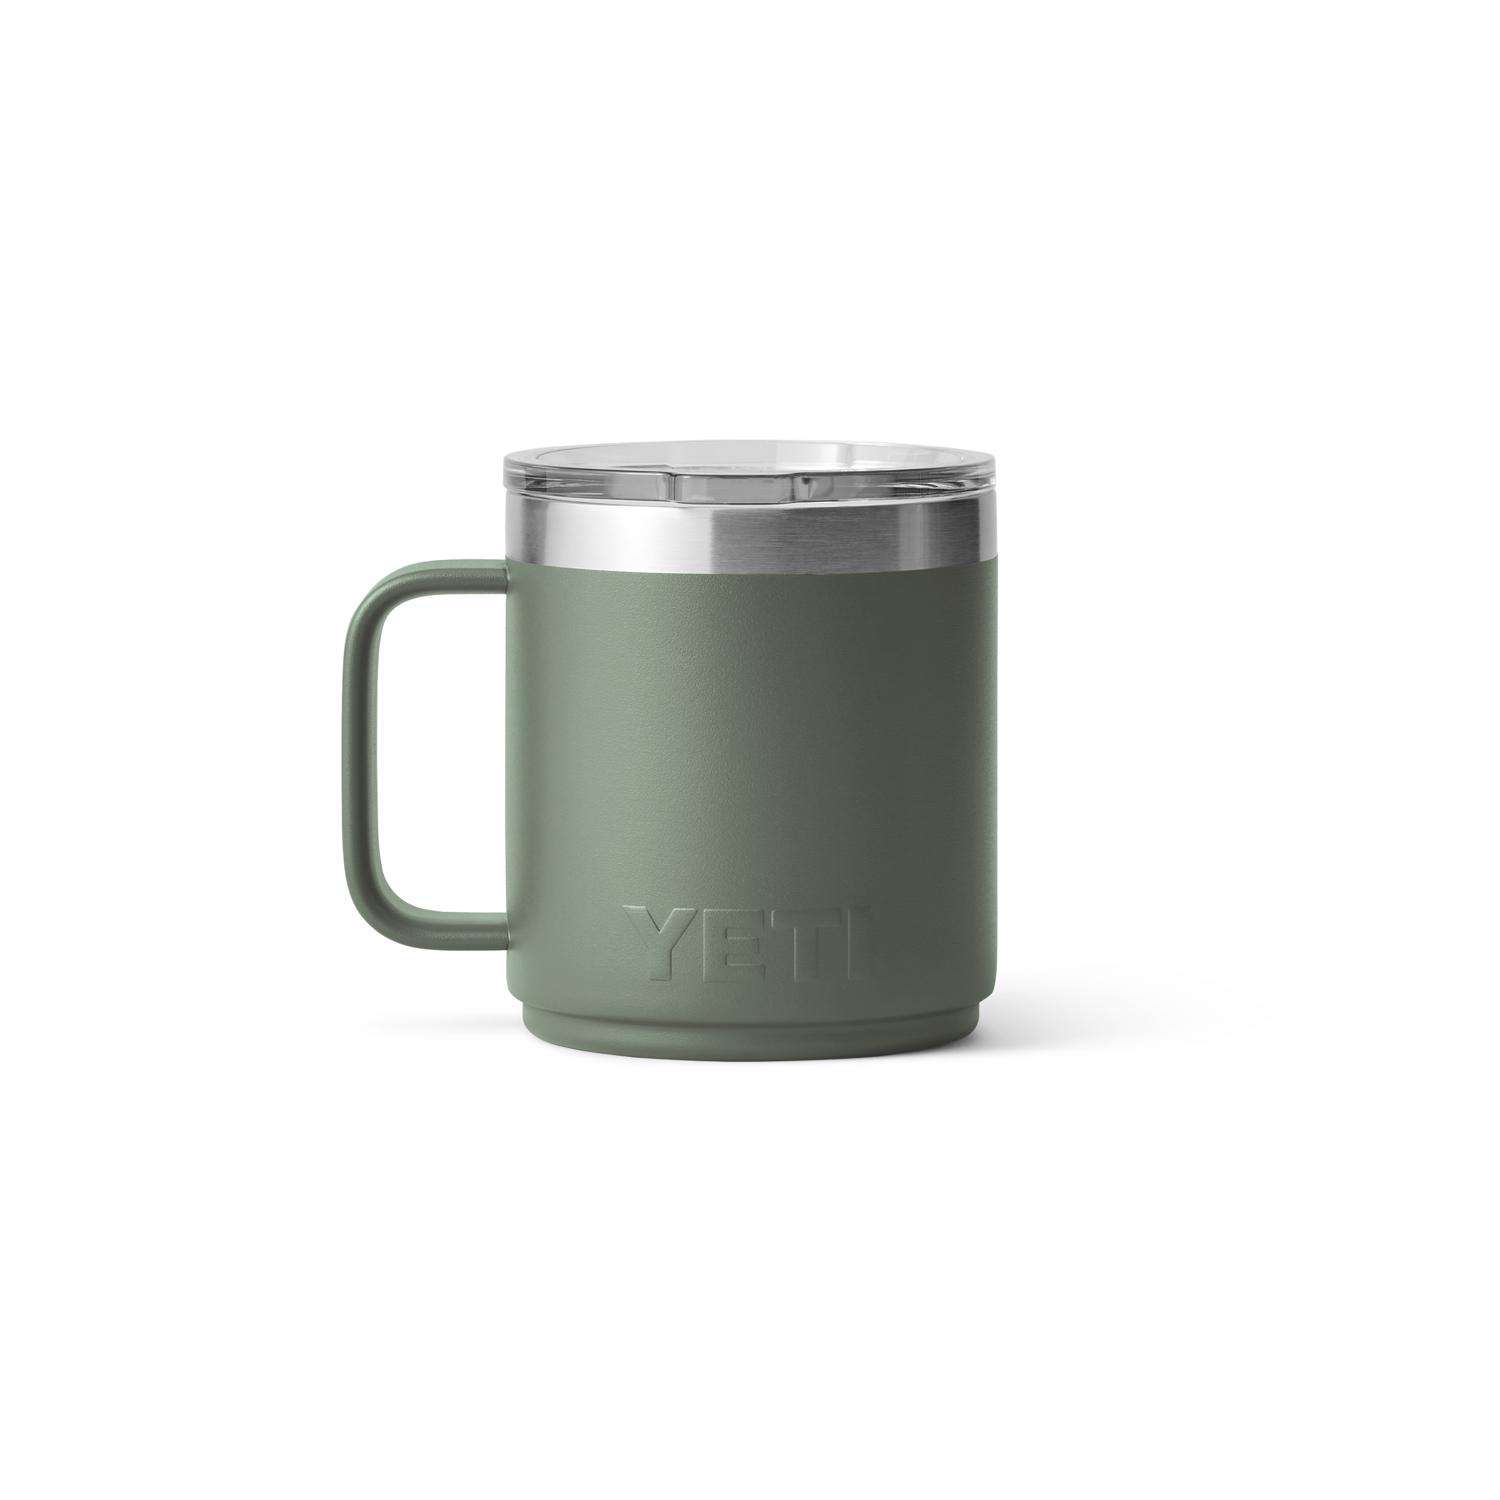 Yeti Rambler Mug 10z - Camp Green – Sun Diego Boardshop